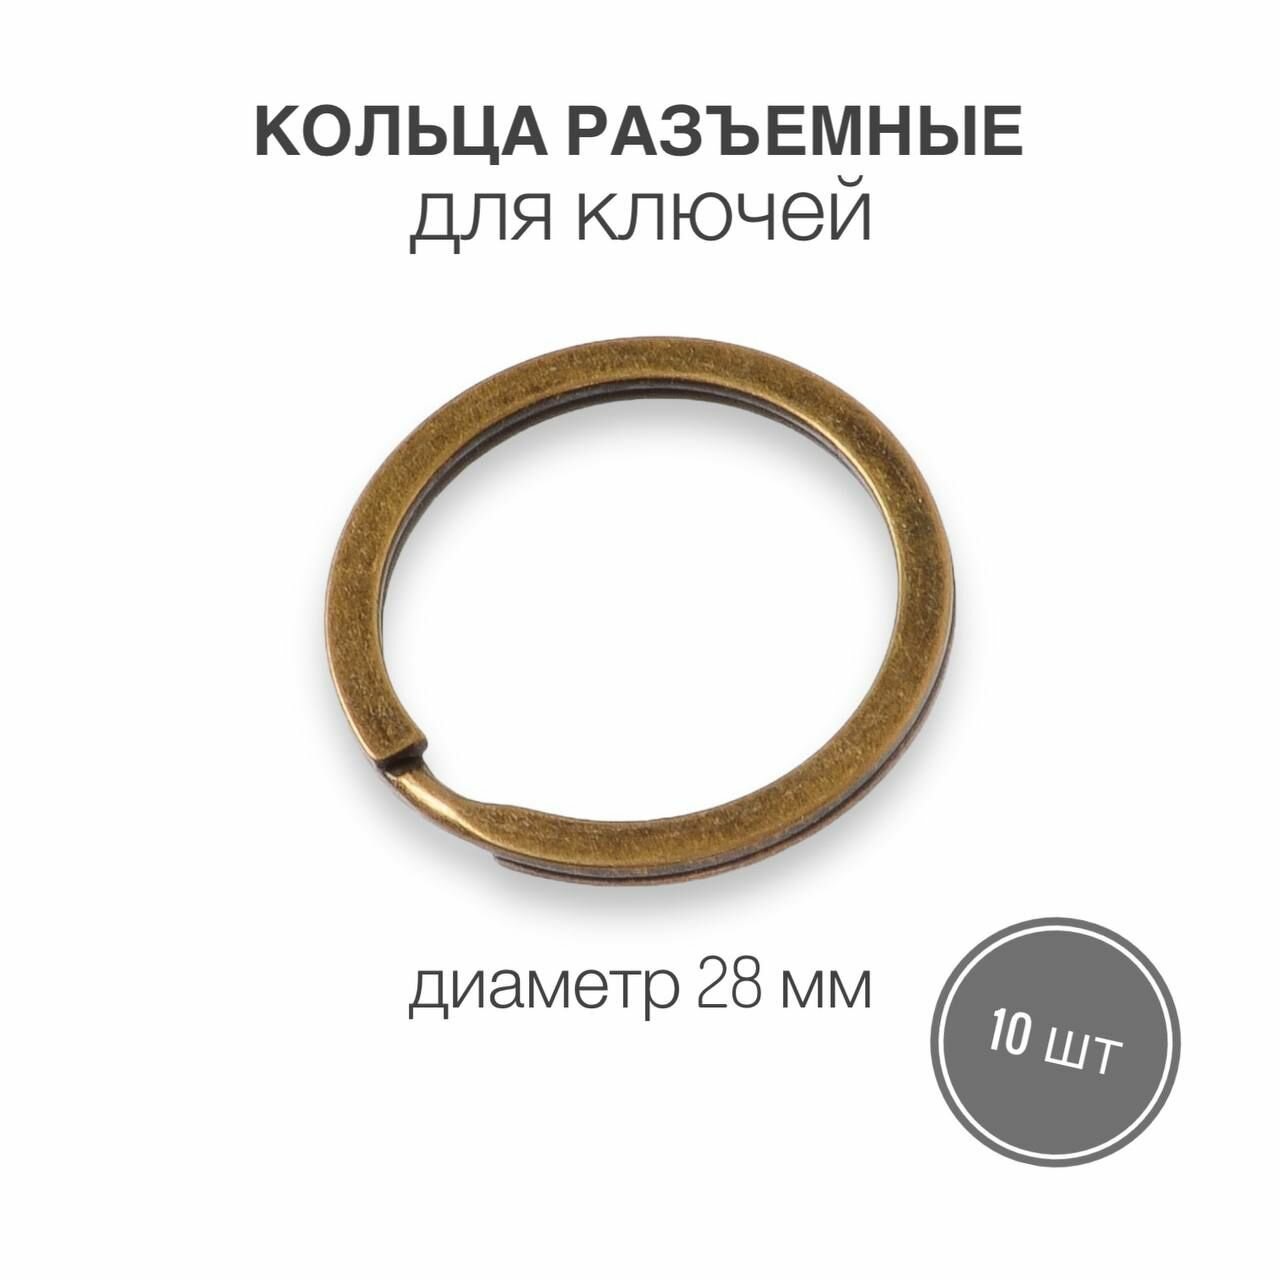 Кольца разъемные кольца для ключей сумок одежды рукоделия диаметр 28 мм 50 шт цвет антик (бронза)